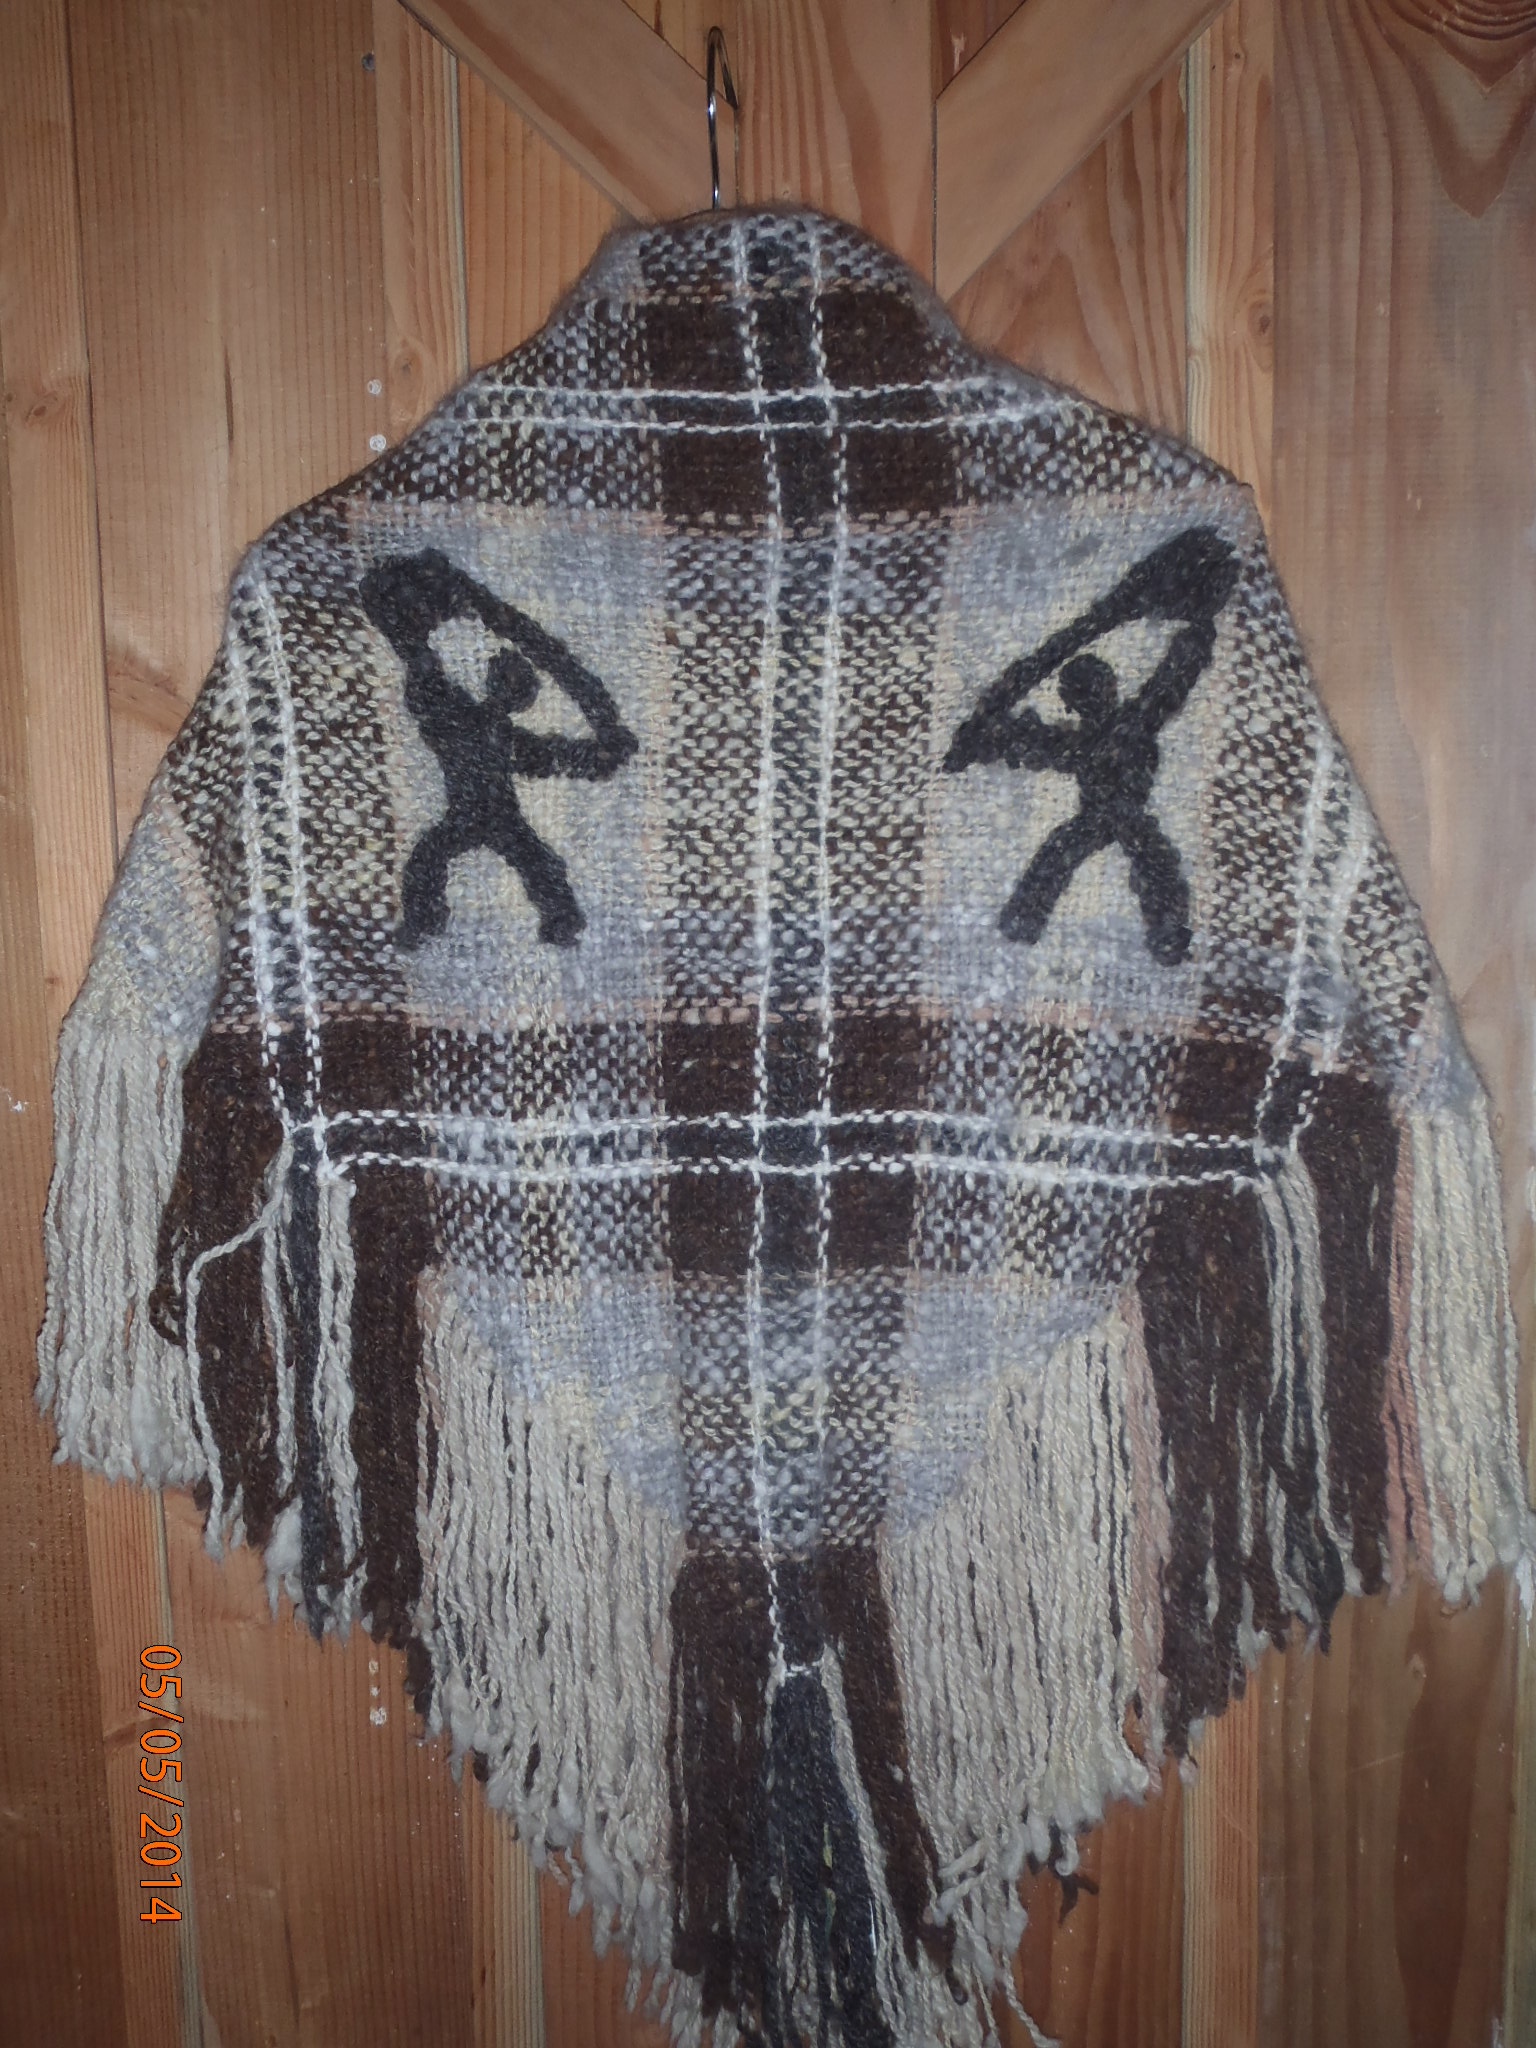 Photo of the petroglyph shawl.